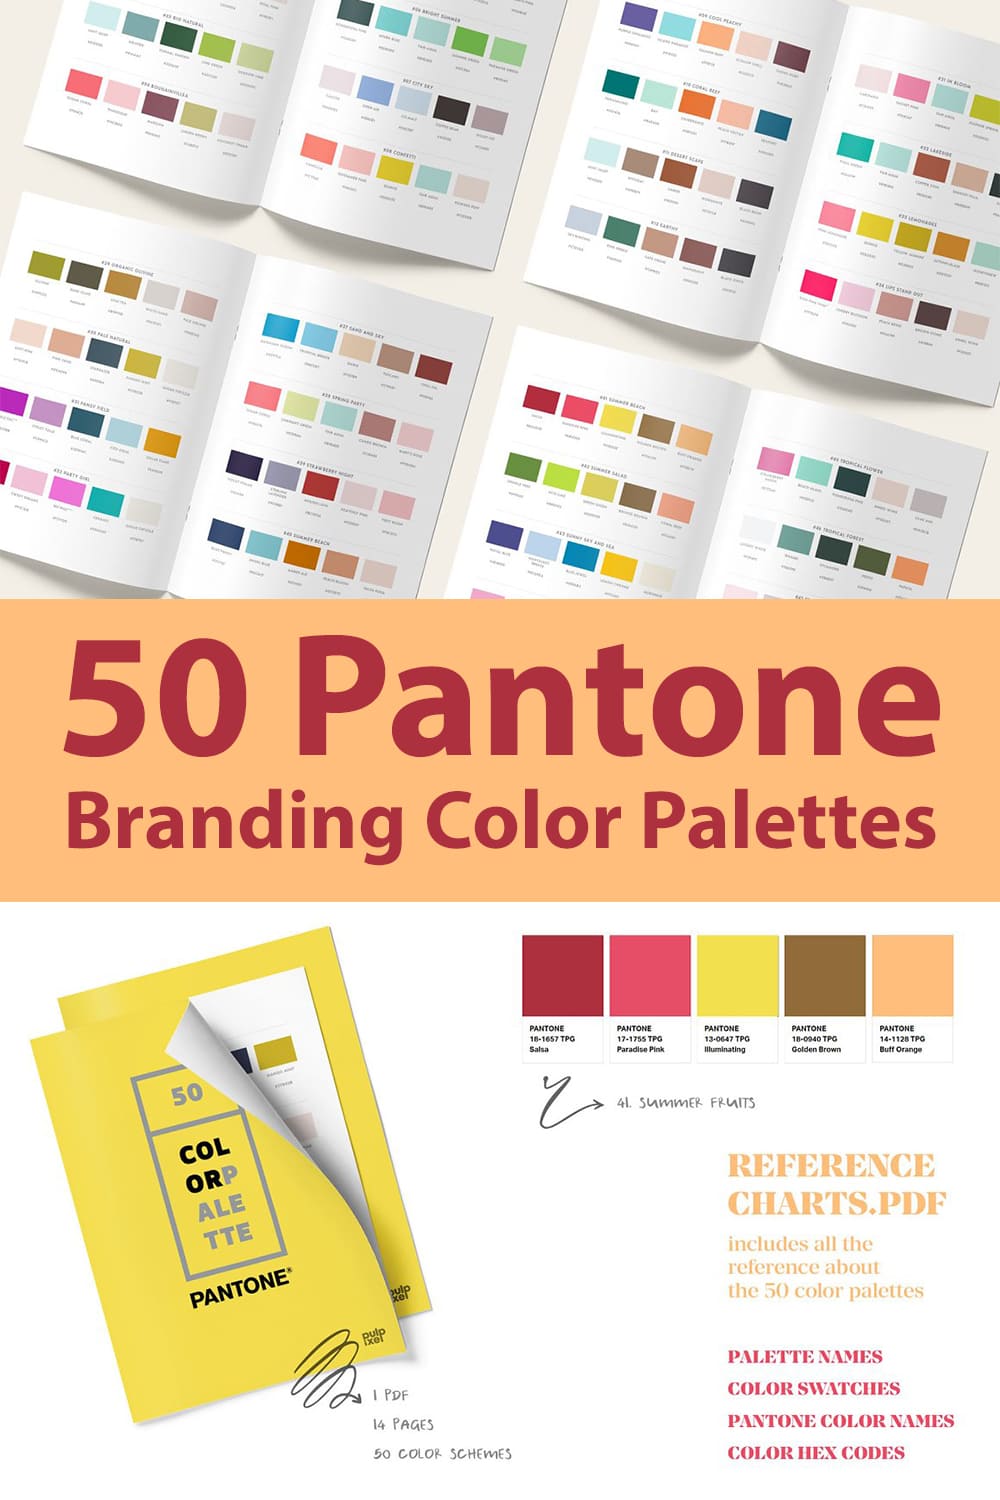 50 Pantone Branding Color Palettes Preview.